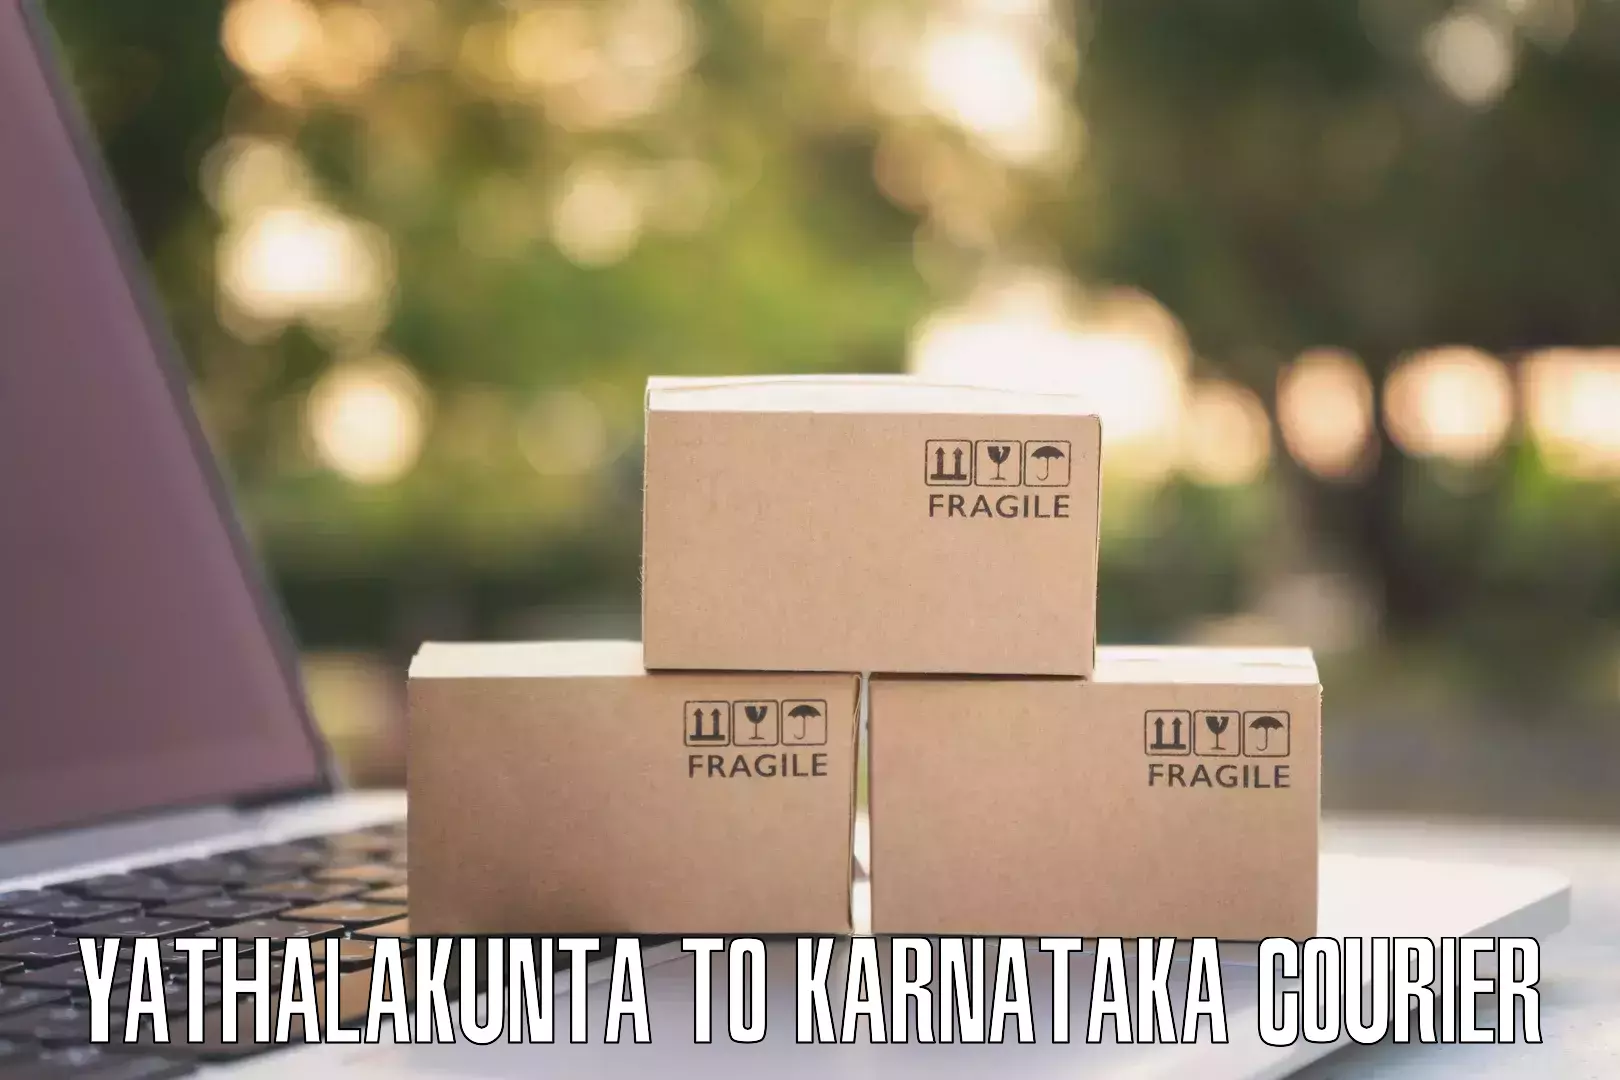 Individual parcel service Yathalakunta to Sringeri